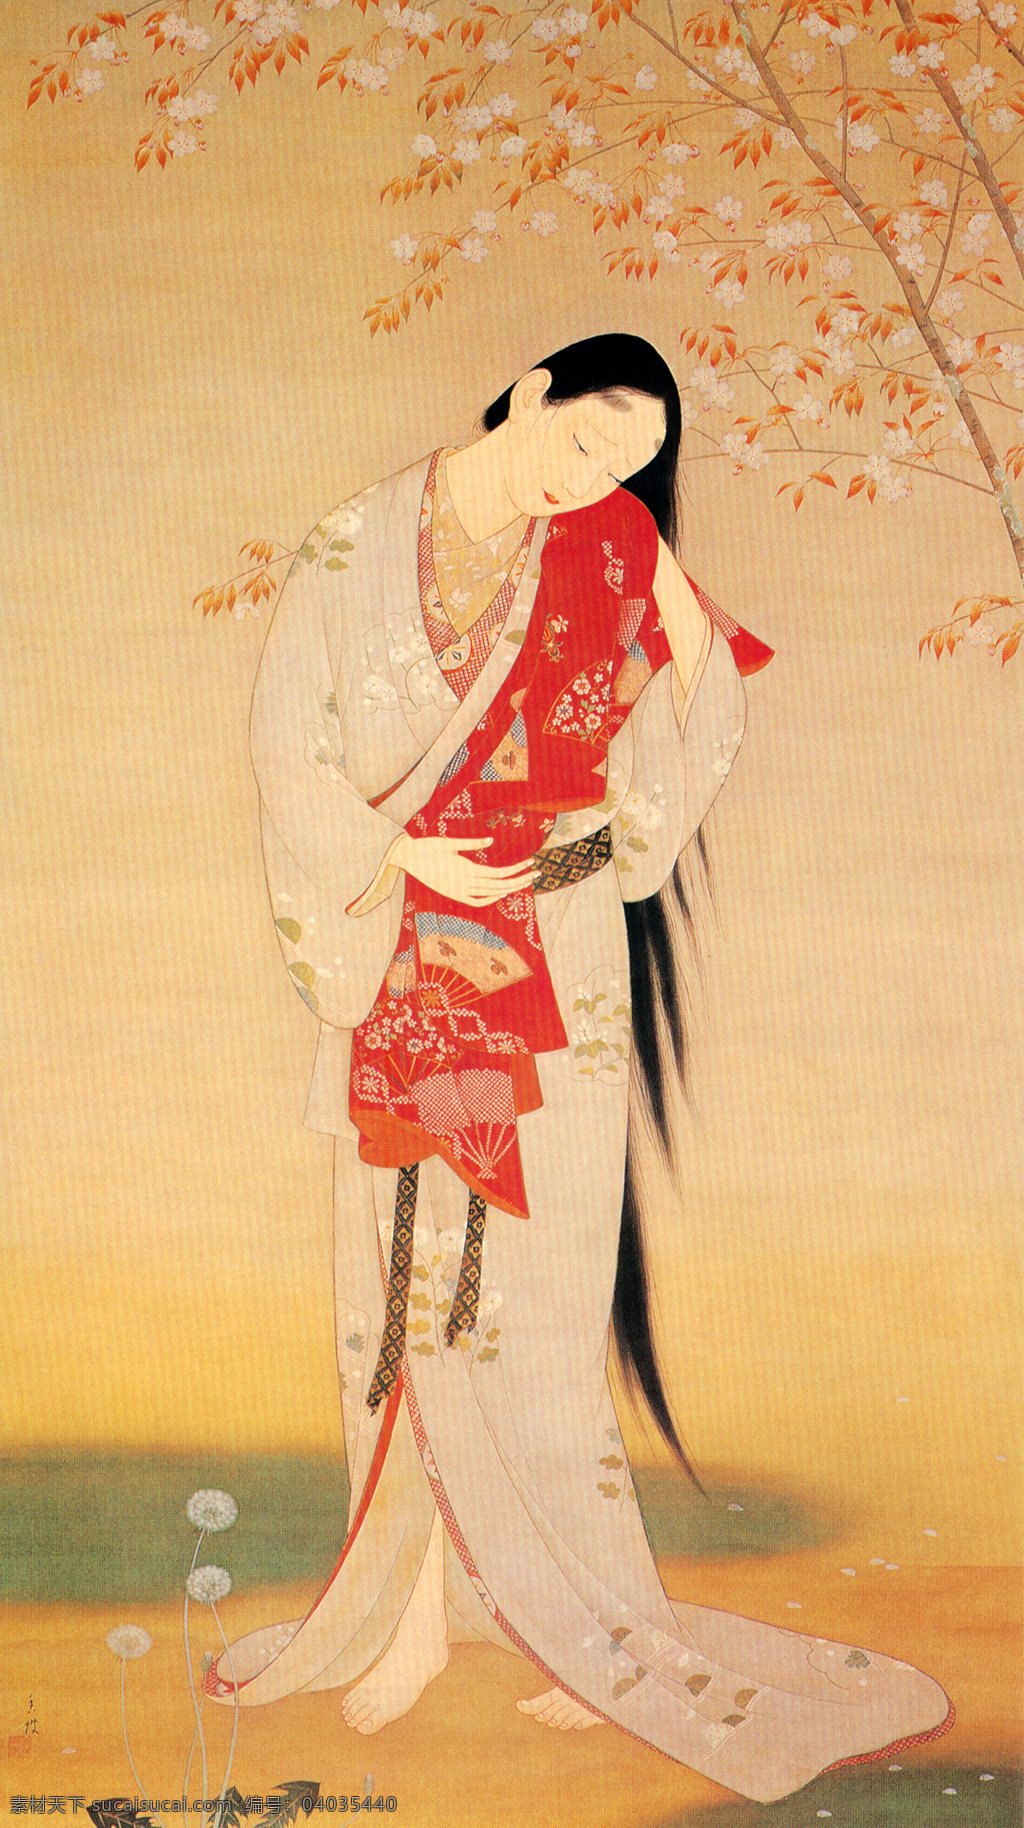 日本美人图 日本绘画 春日 樱花 和服 浮世绘 美人 日本传统绘画 绘画书法 文化艺术